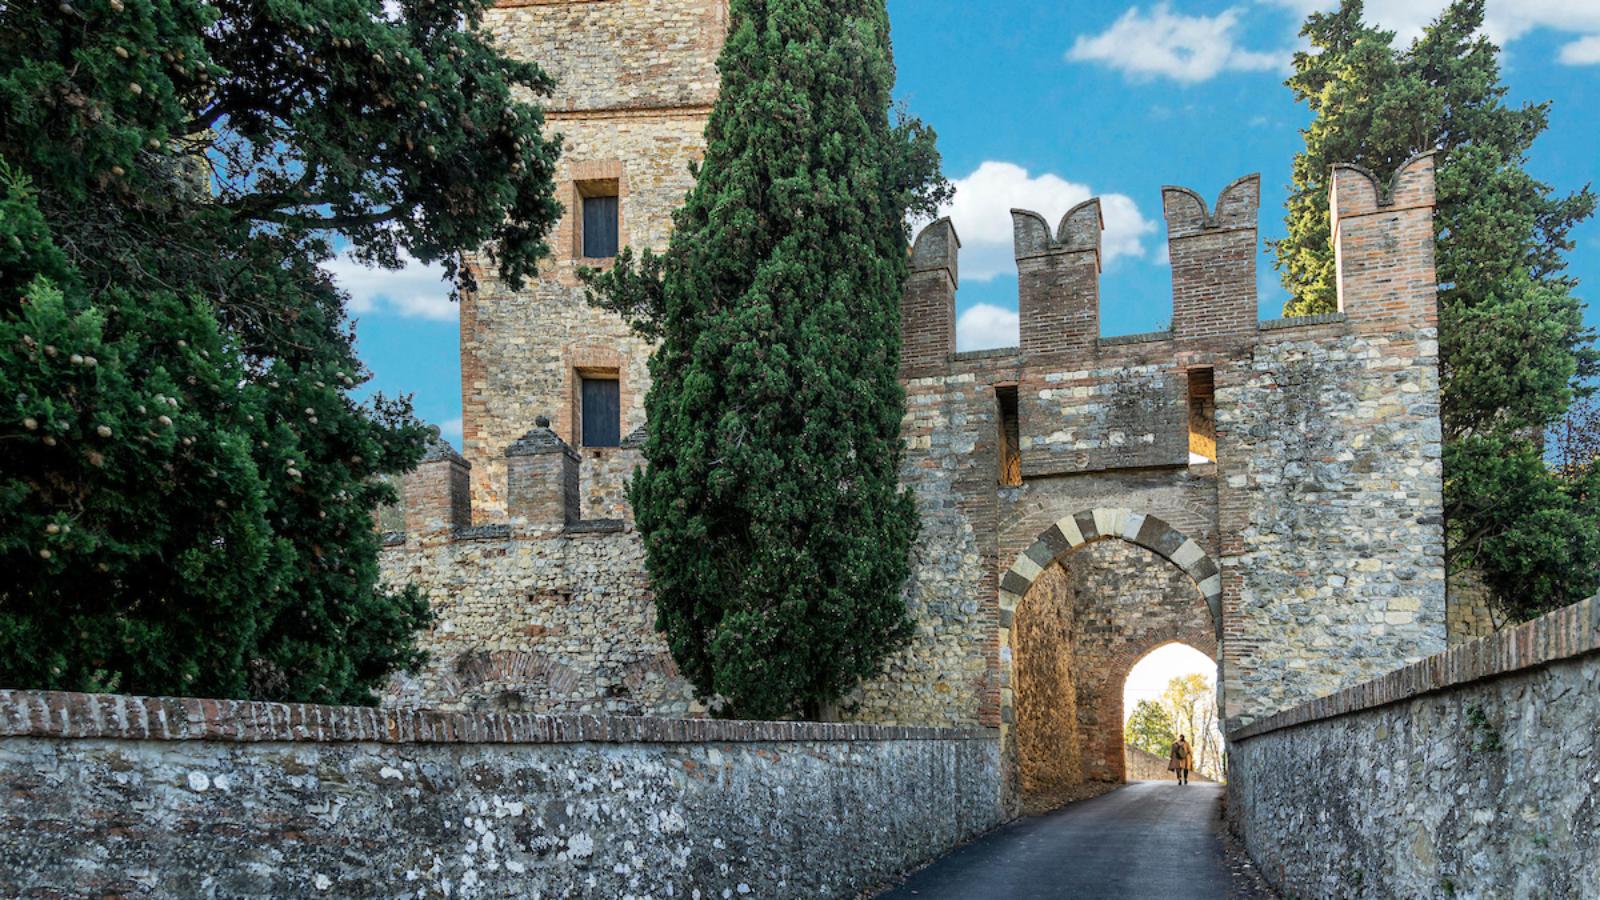 Castello di Serravalle ingresso del castello